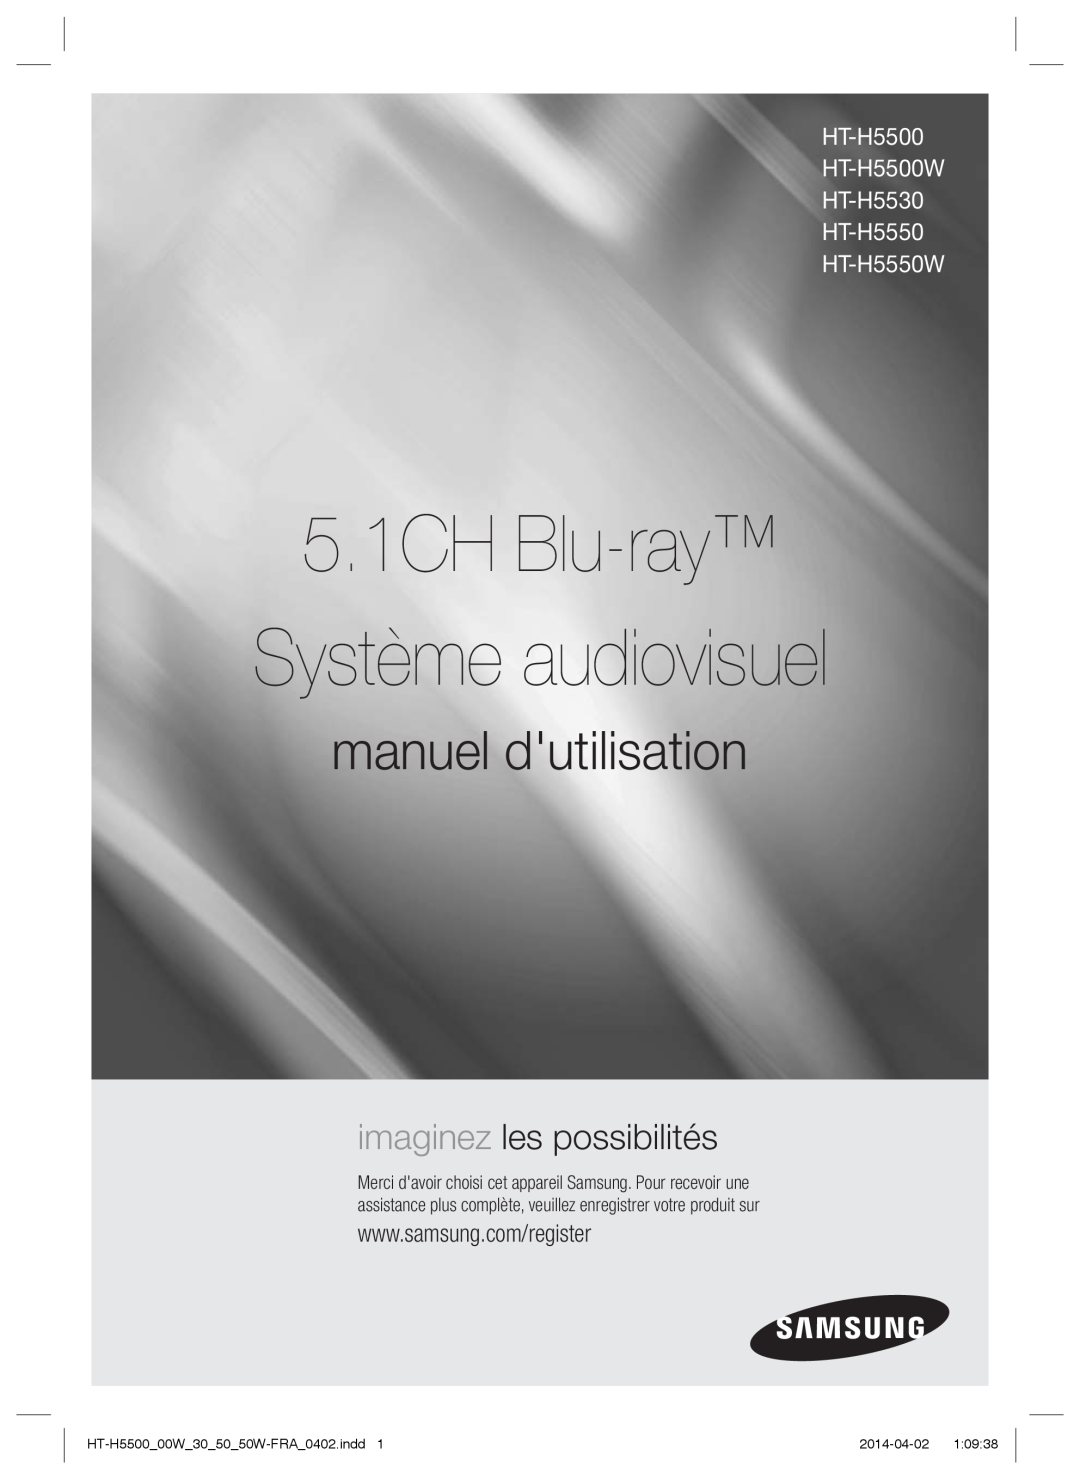 Samsung HT-H5500/TK manual 5.1CH Blu-ray Système audiovisuel, manuel dutilisation, imaginez les possibilités, 2014-04-02 